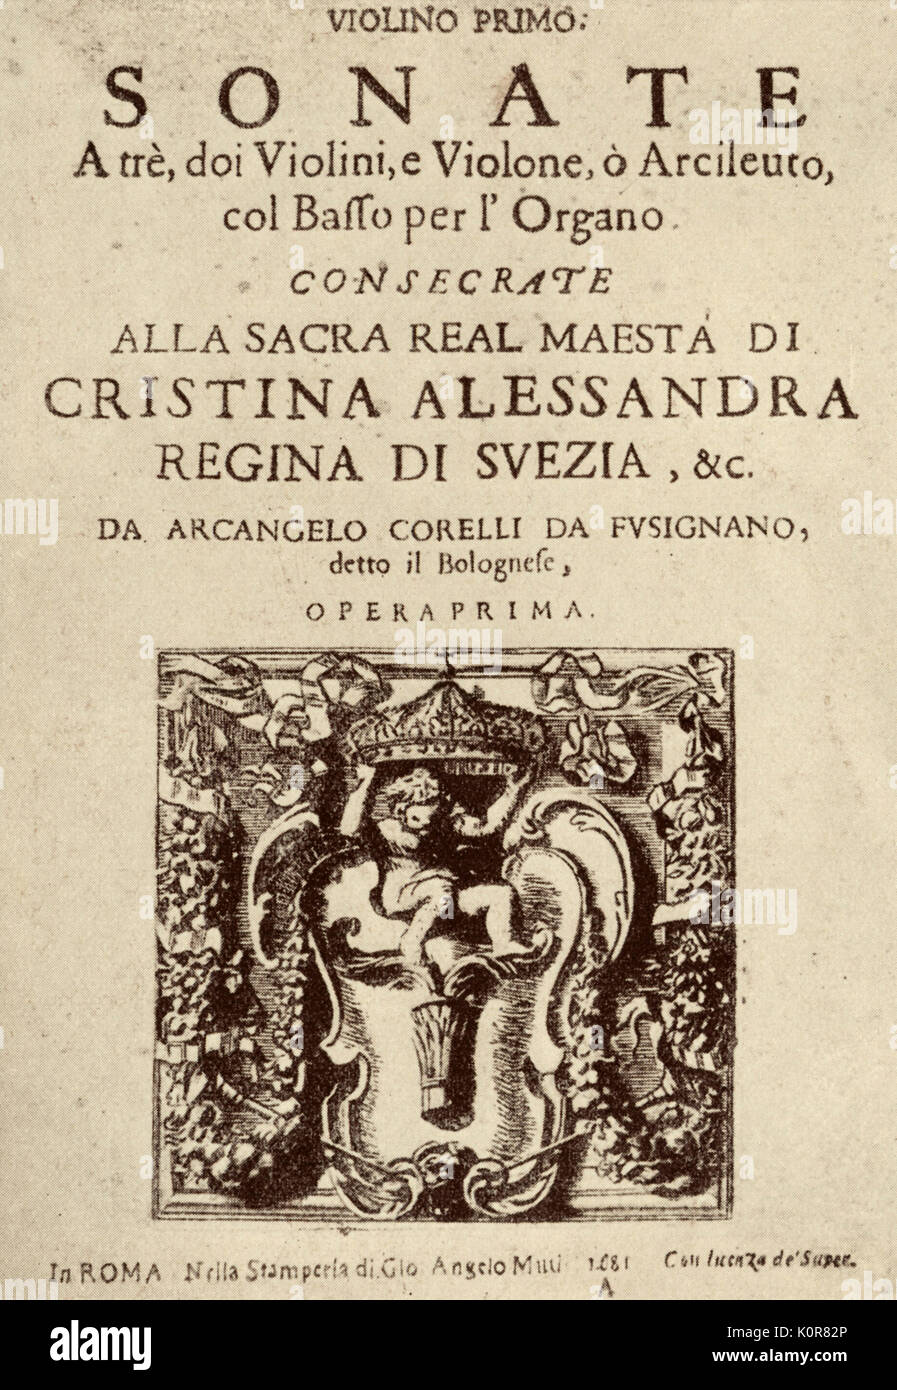 CORELLI, Arcangelo - Sonate a Tre (Op.1). Italienischer Violinist und Komponist, 1653-1713. S. Mascardi, Rom 1685. Stockfoto